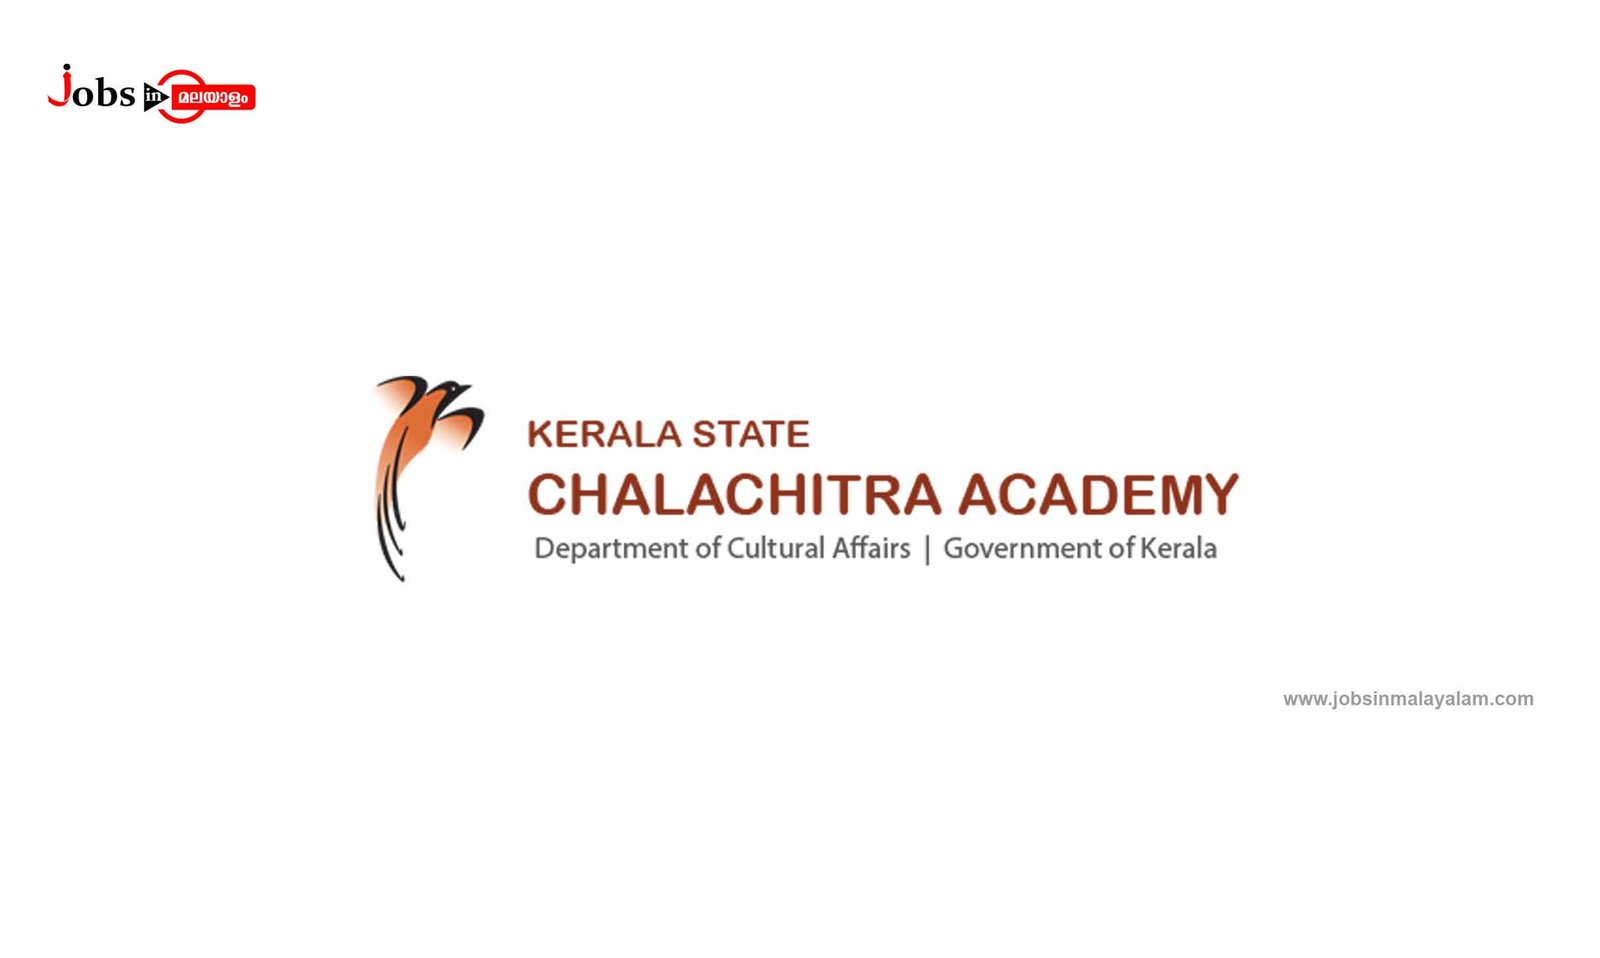 Kerala State Chalachitra Academy